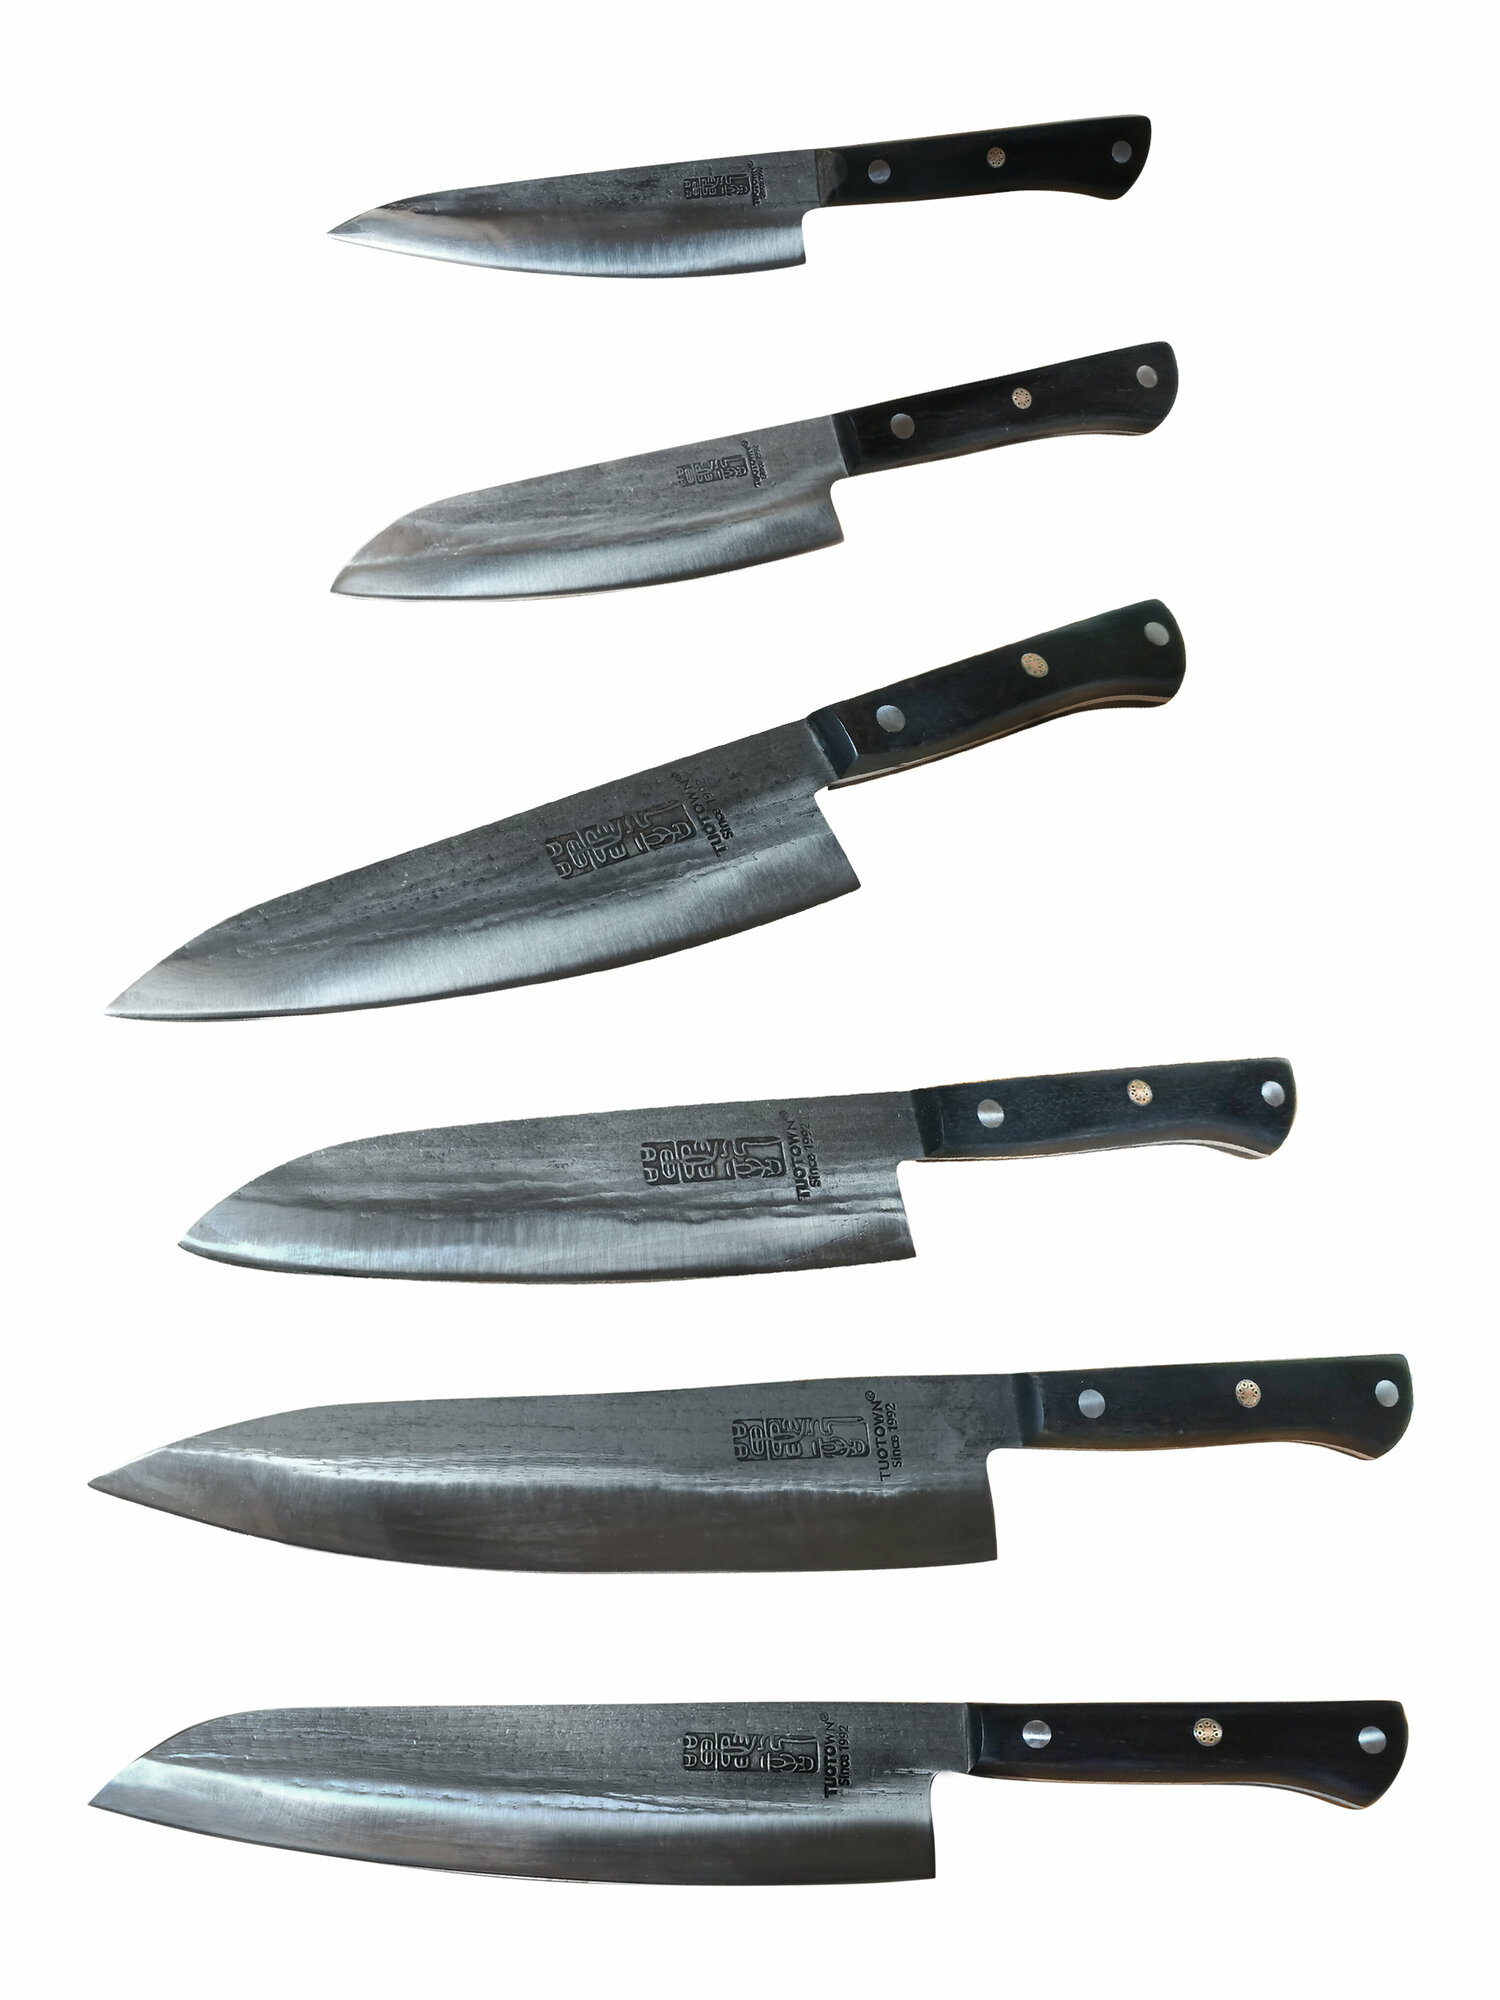 Набор кованных ножей для кухни 6 шт. Углеродистая сталь, древесный пластик.